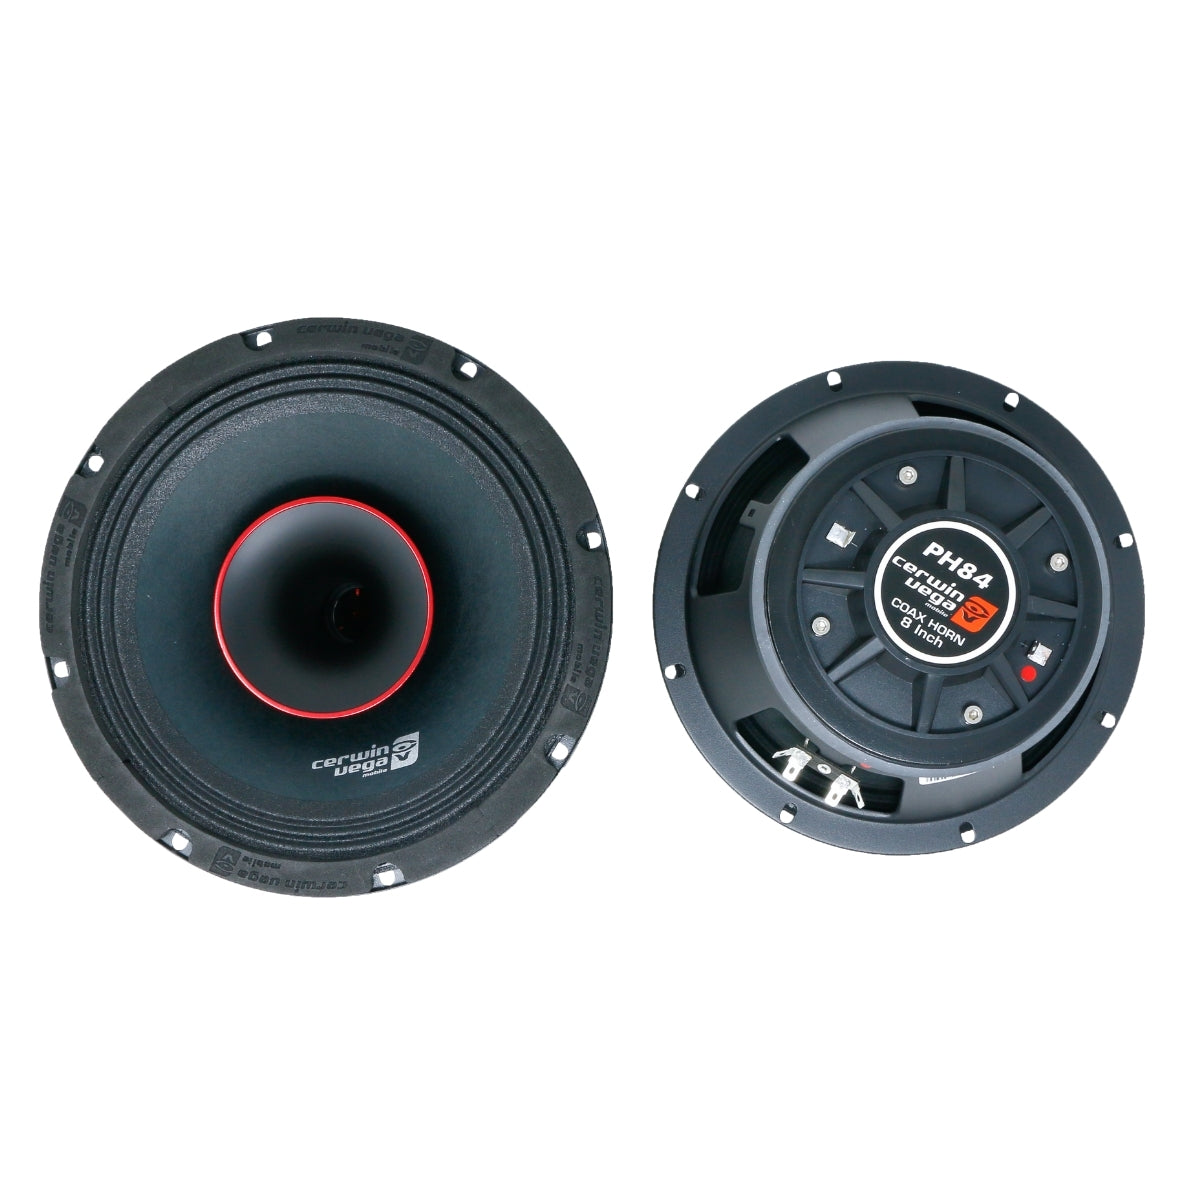  8 Inch PRO Co-Ax Horn  Full Range Speaker